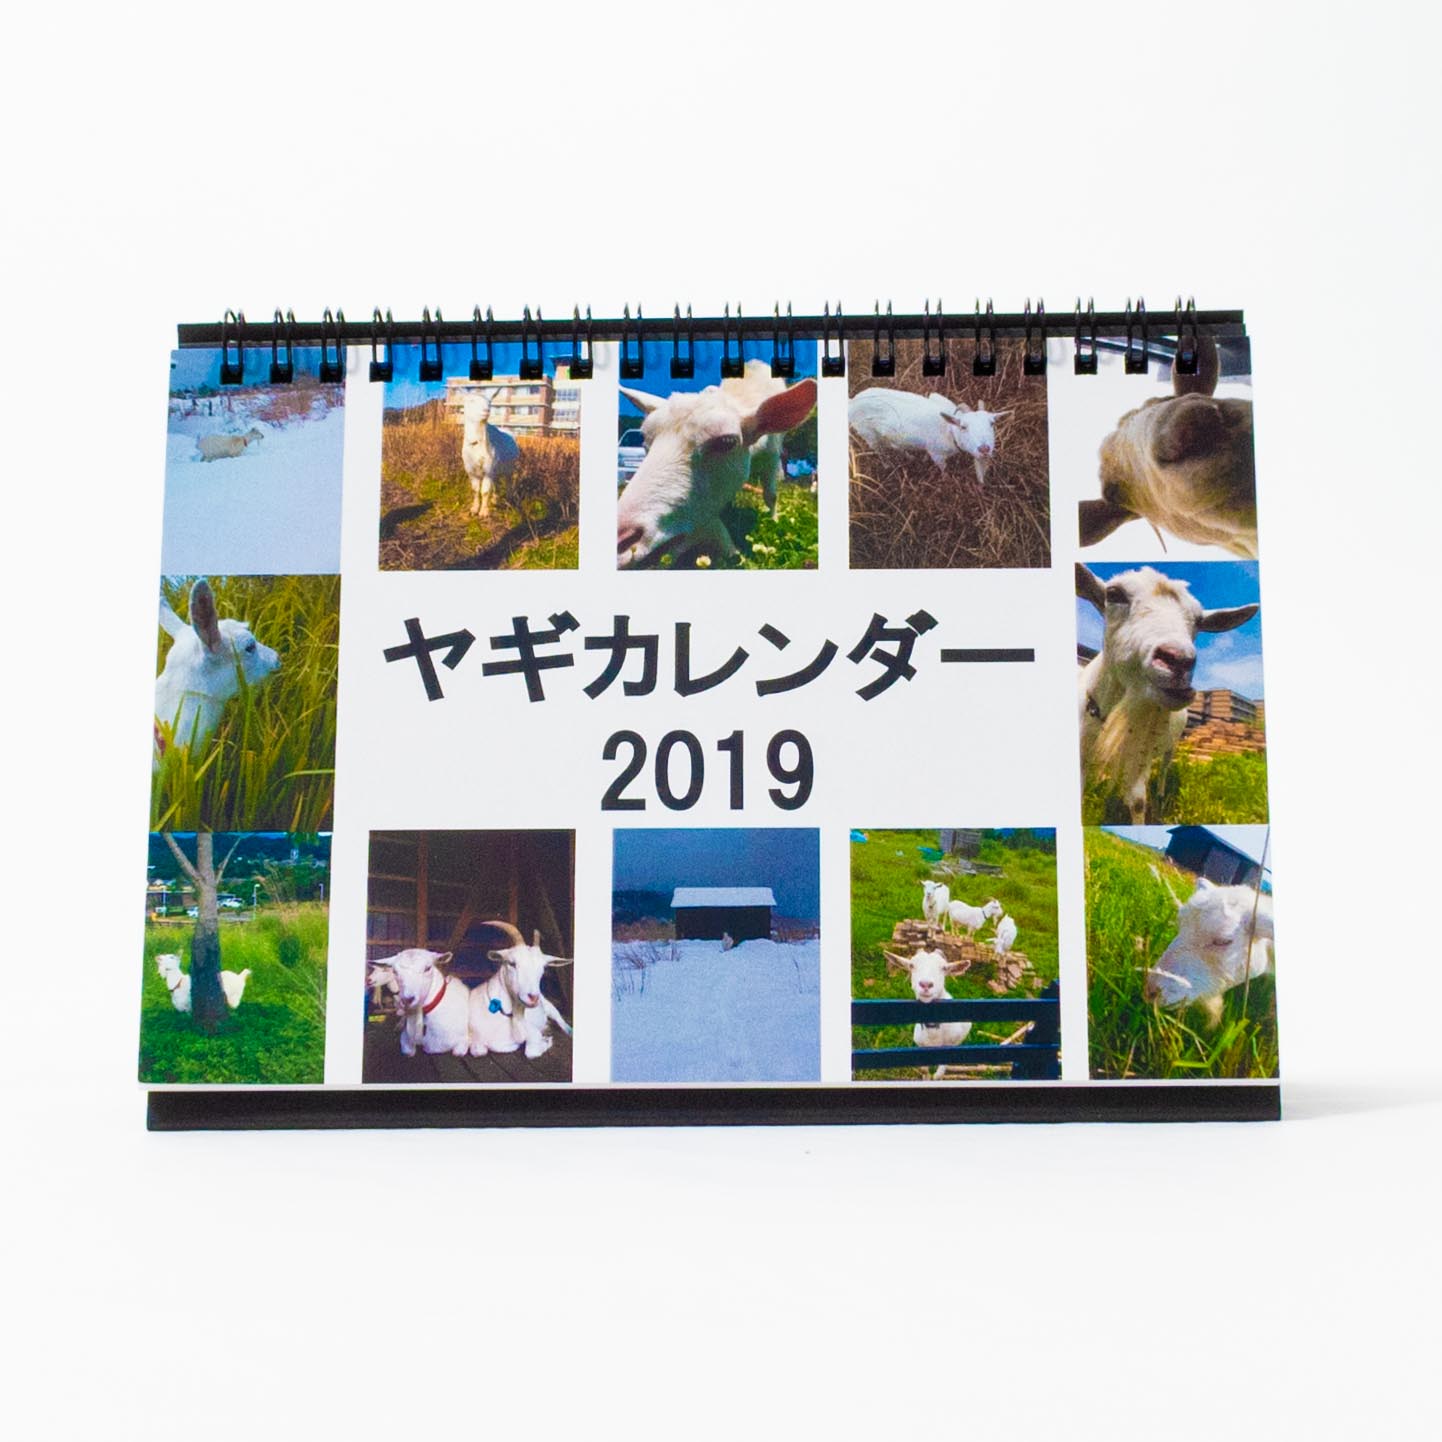 「征矢  勇人 様」製作のオリジナルカレンダー